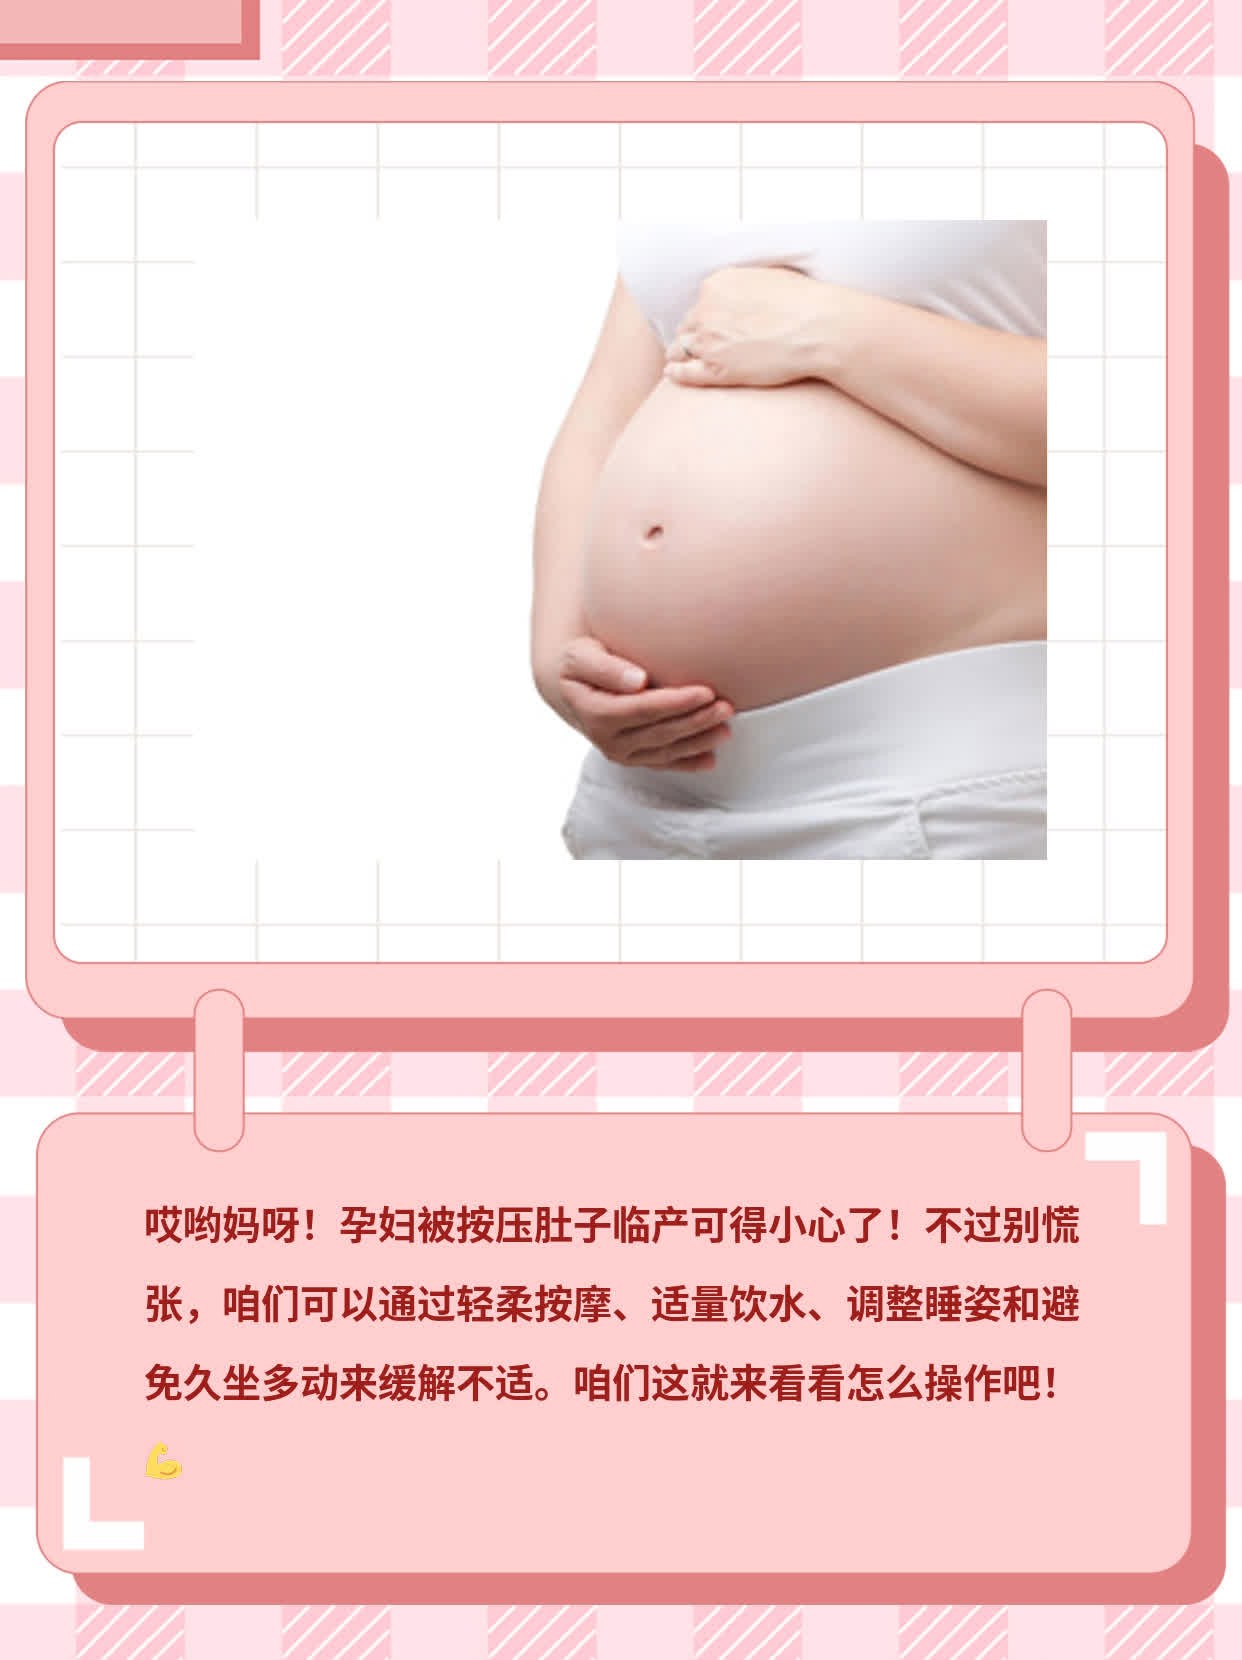 孕妇被按压肚子临产有事吗？